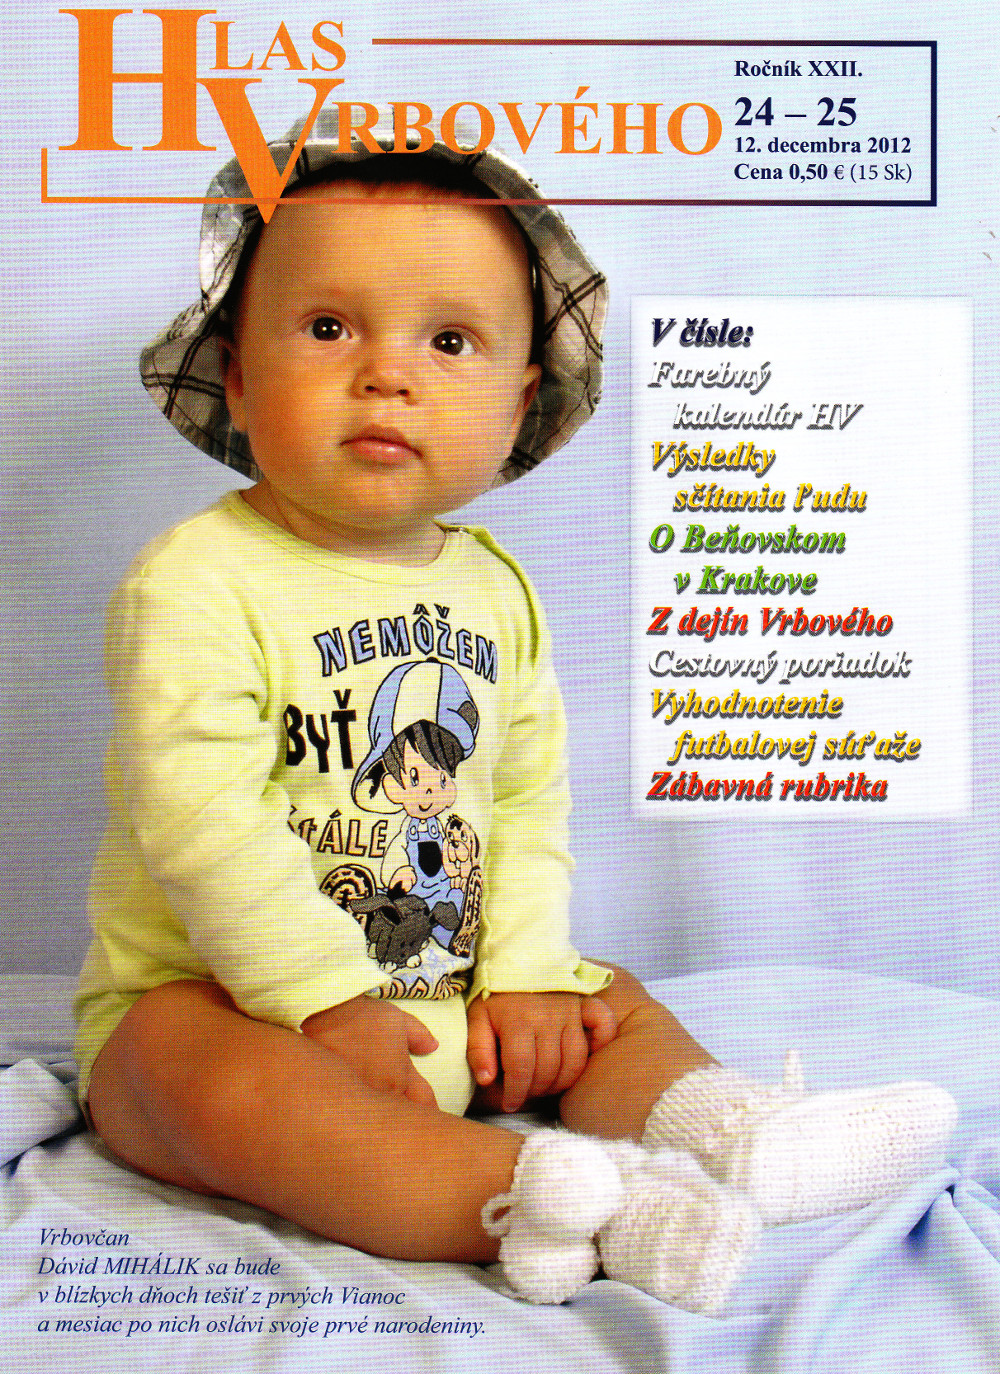 Hlas Vrbového 24/2012, strana 1